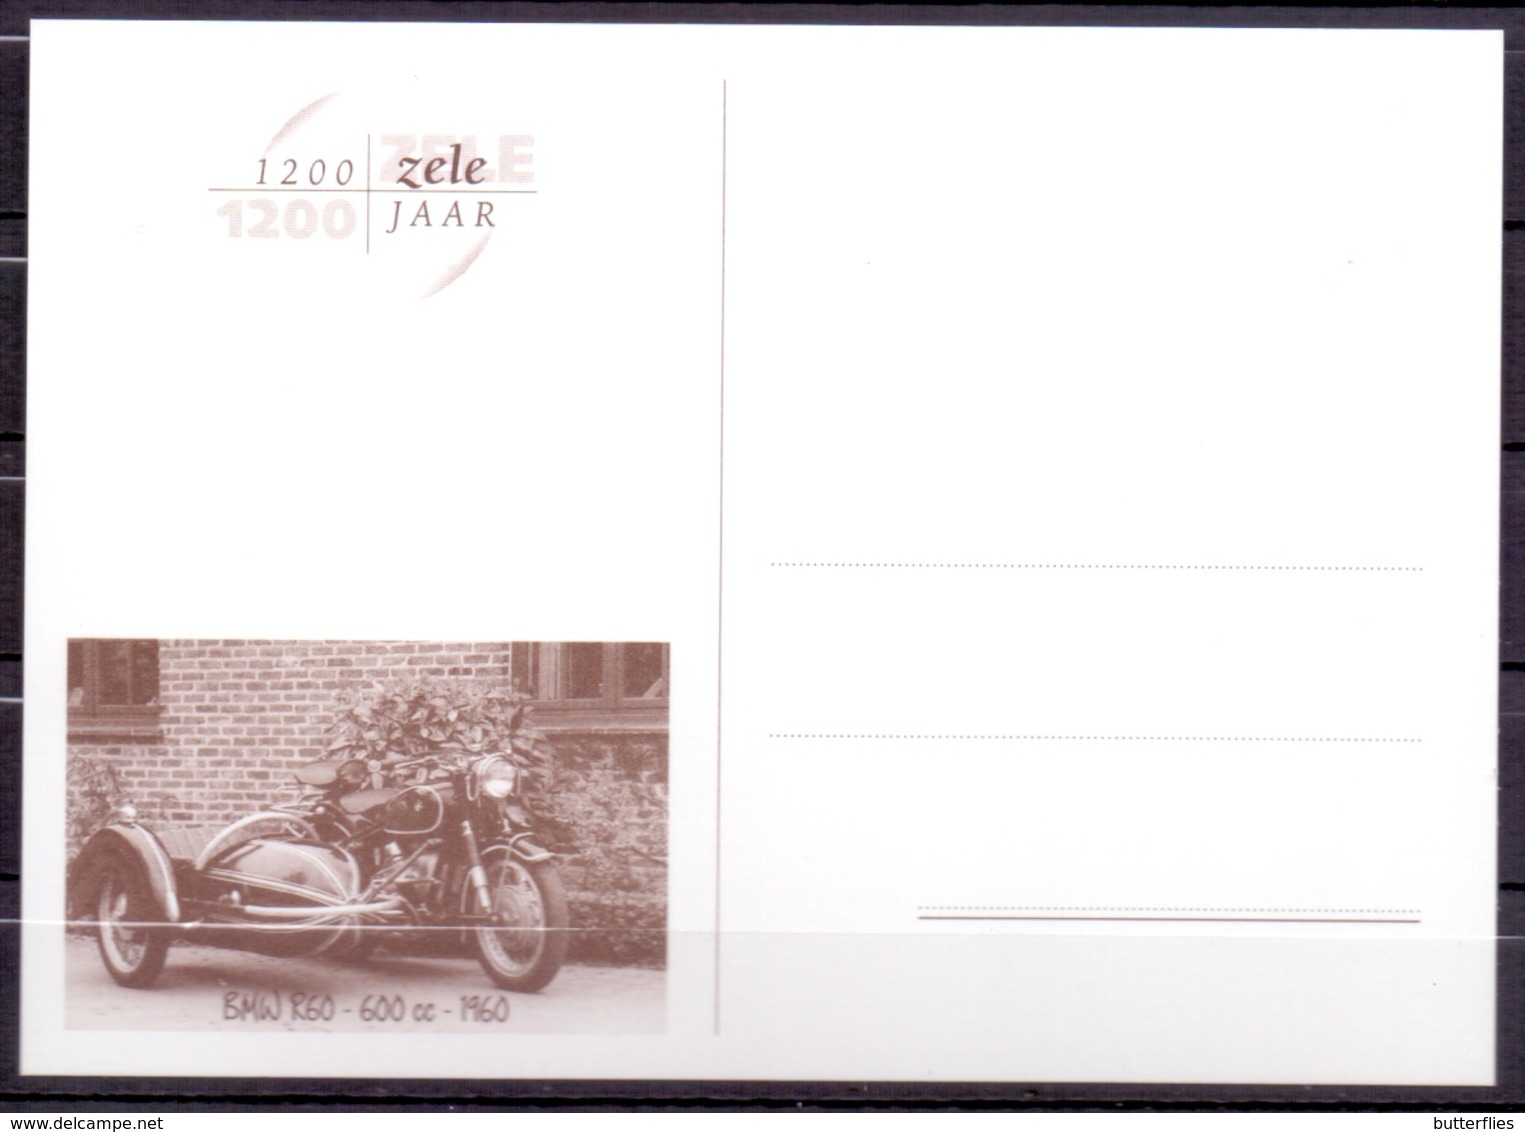 Belgie  -  Zele  ** 6 Max. Kaart  + Kaart Kouterkapel - 1200 Jaar Zele  ** - 2011-..